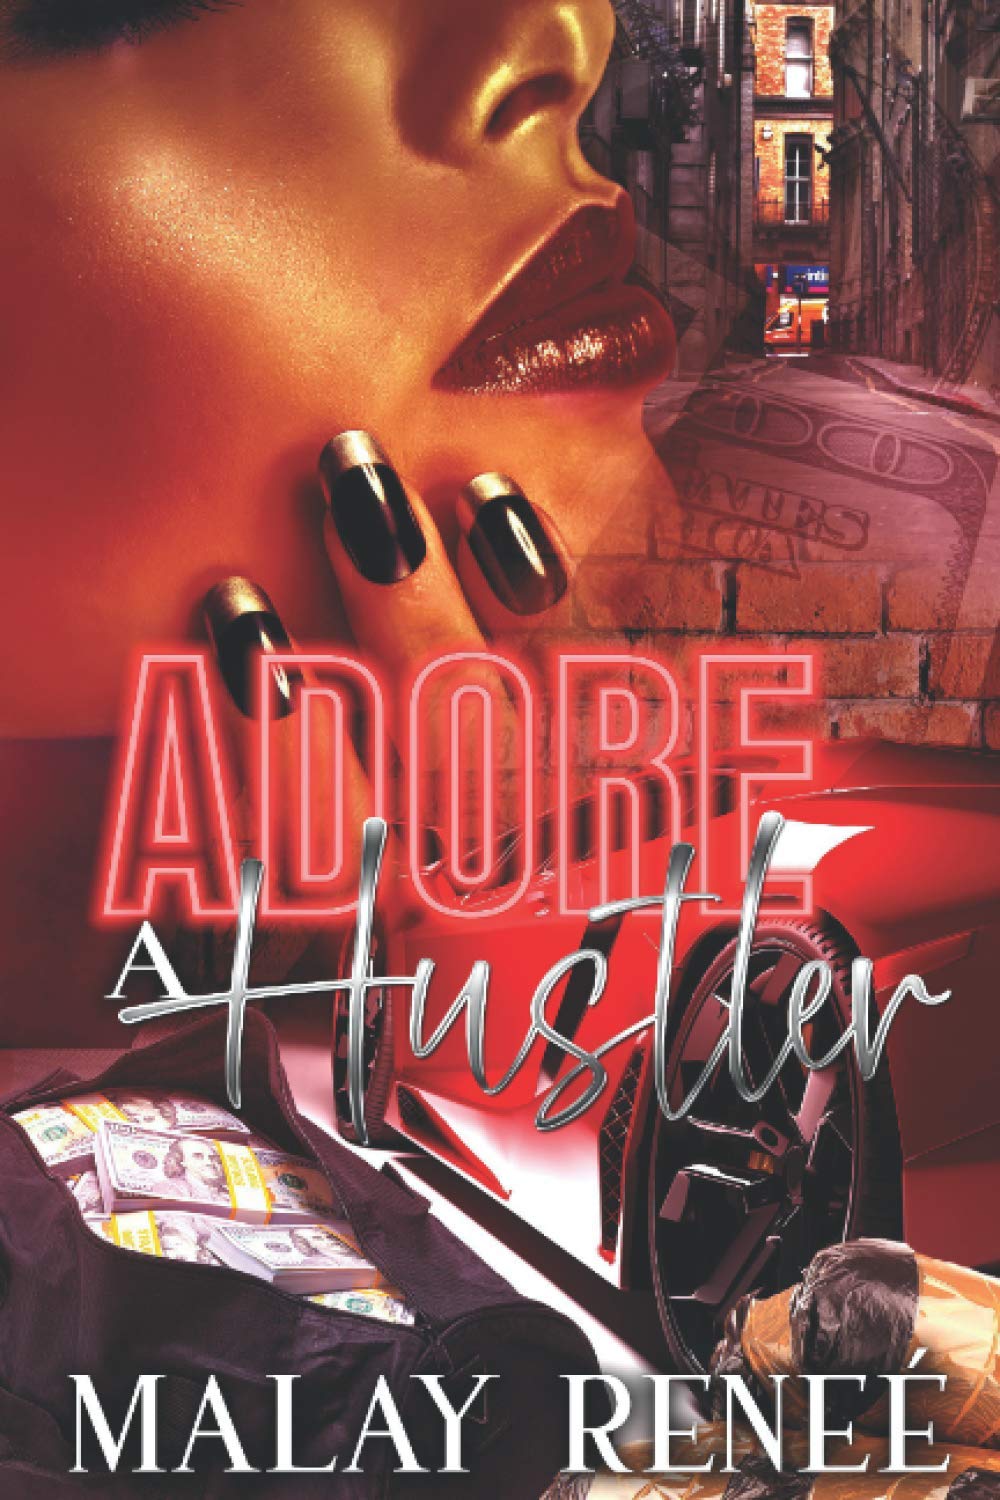 Adore A Hustler SureShot Books